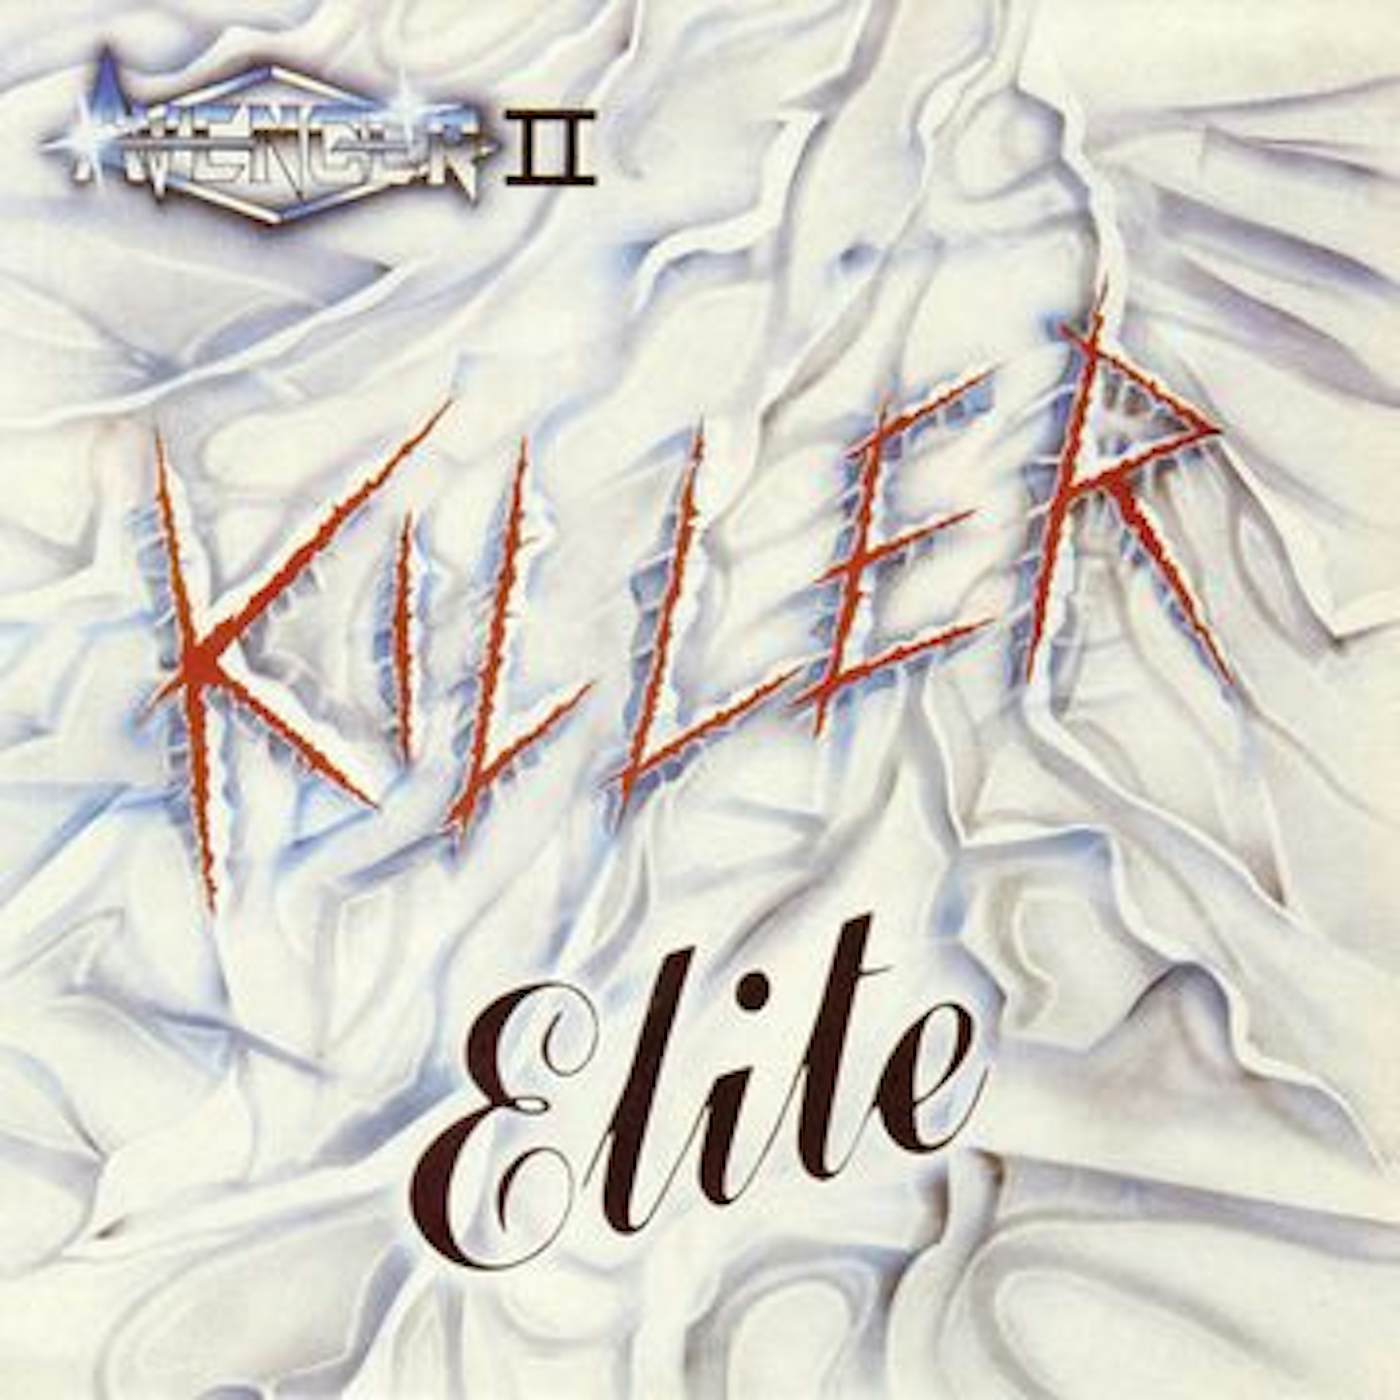 Avenger Killer Elite Vinyl Record